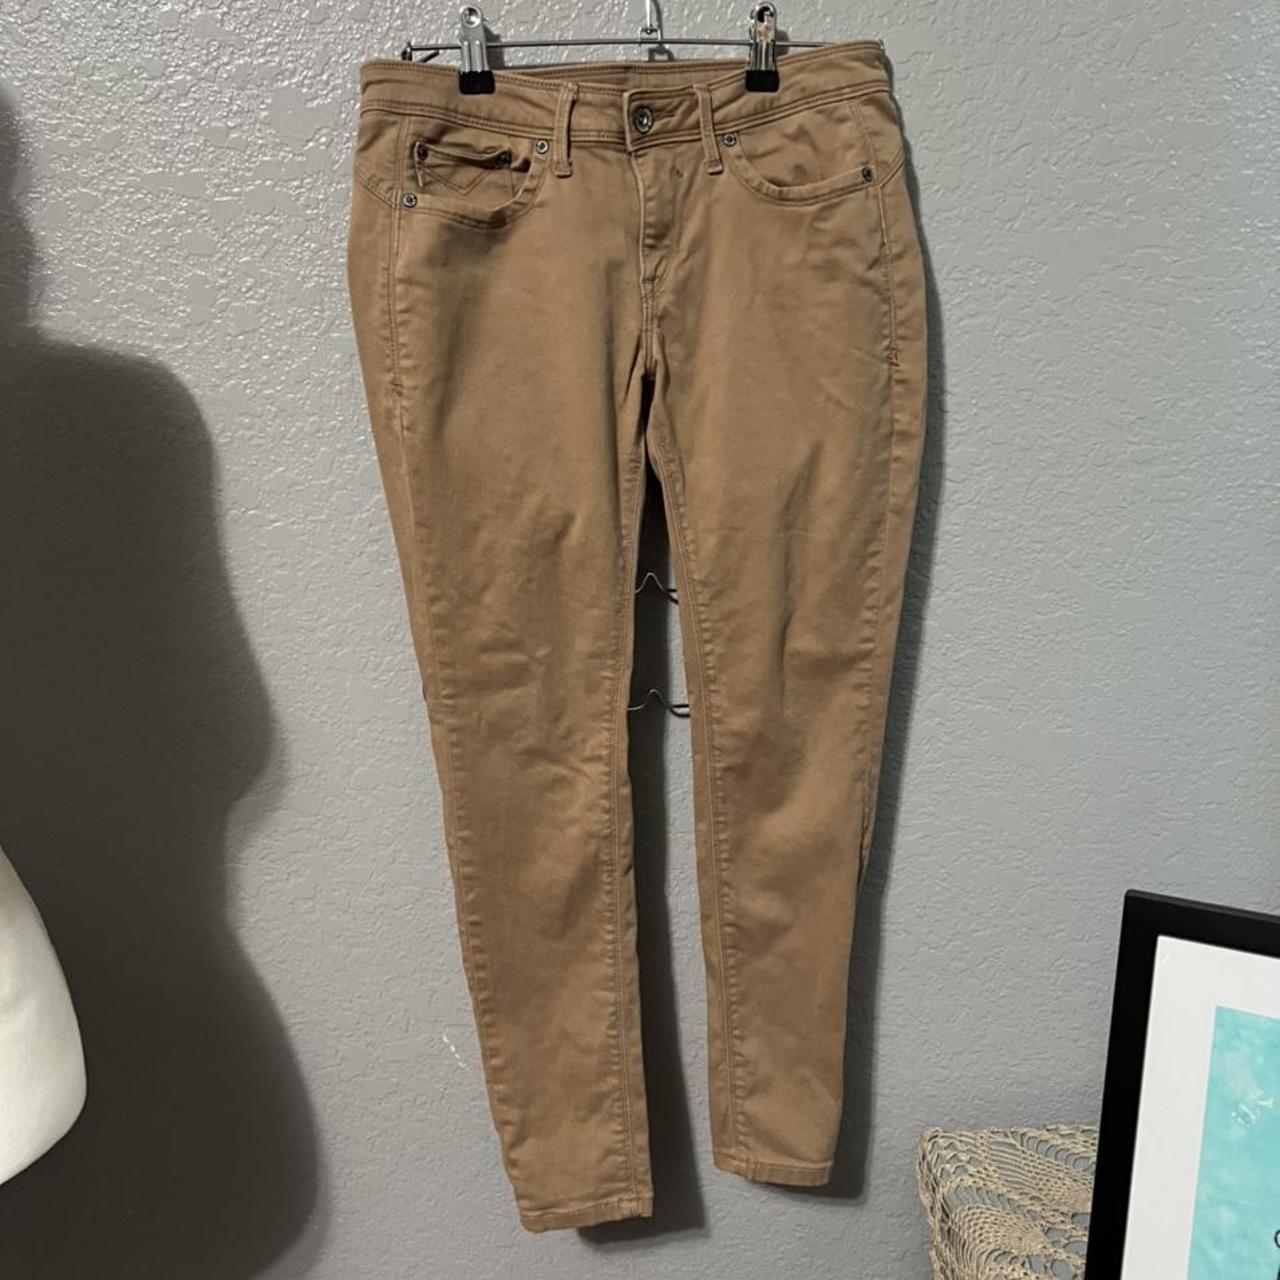 Product Image 2 - JagThug khaki pants, great condition.